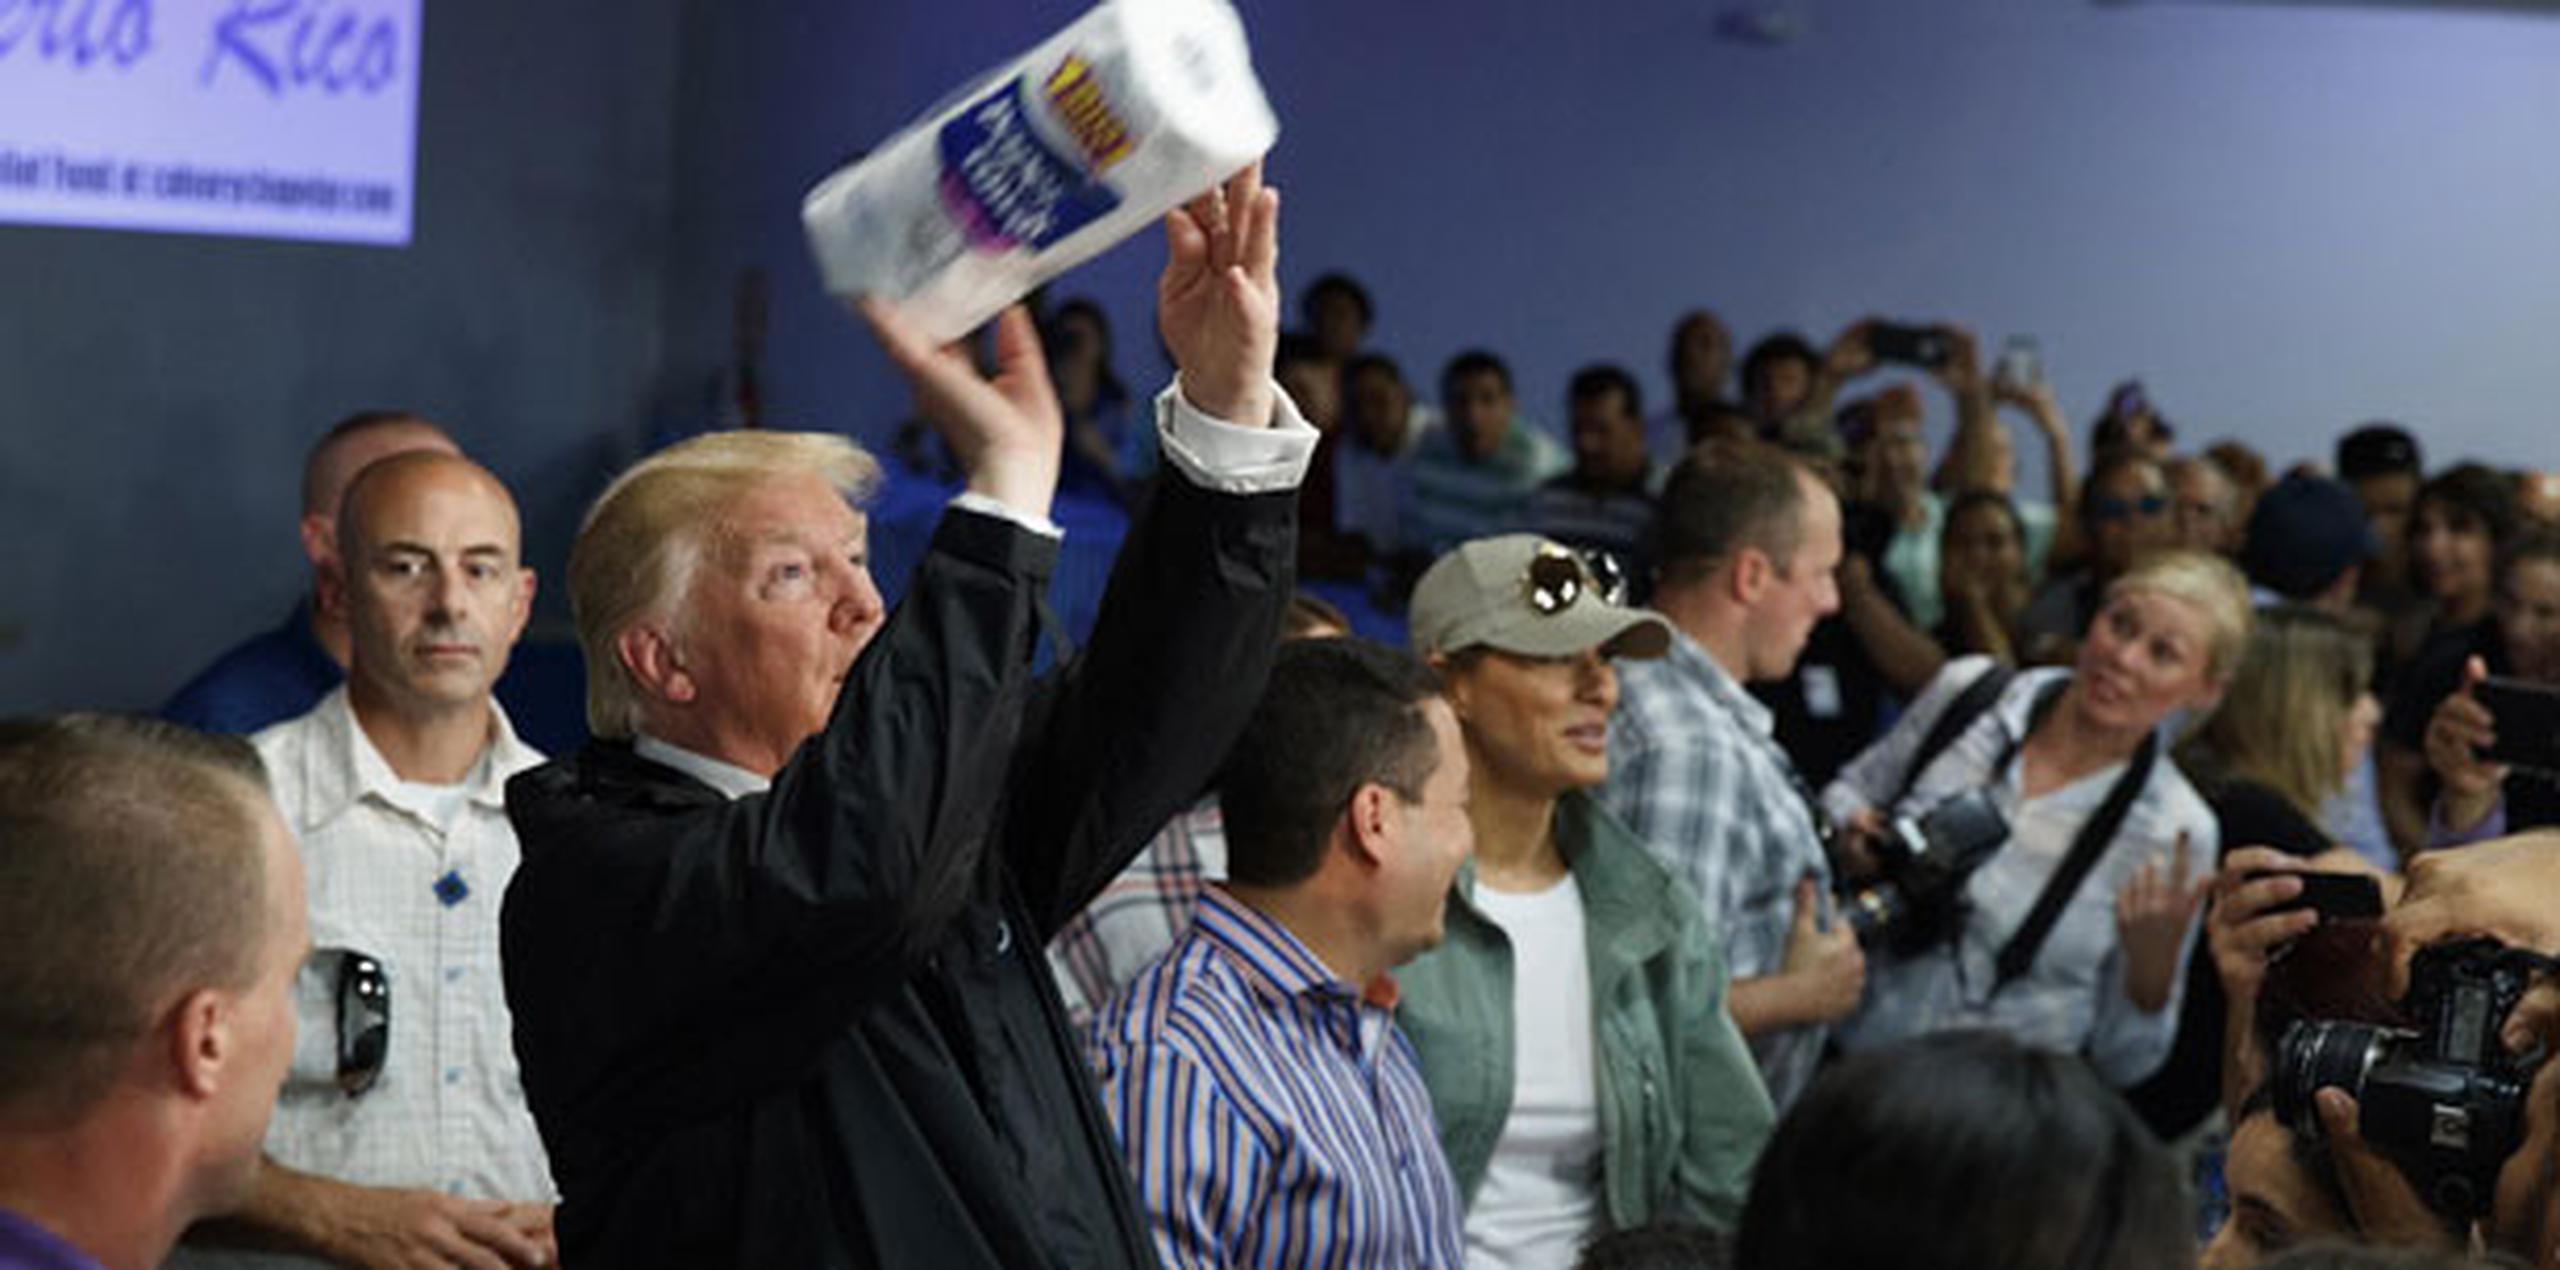 La imagen del presidente de EE.UU., Donald Trump, lanzando rollos de papel a ciudadanos afectados por los huracanes fue evocada por varios de ellos como símbolo de la actitud del Gobierno con Puerto Rico. (Archivo)